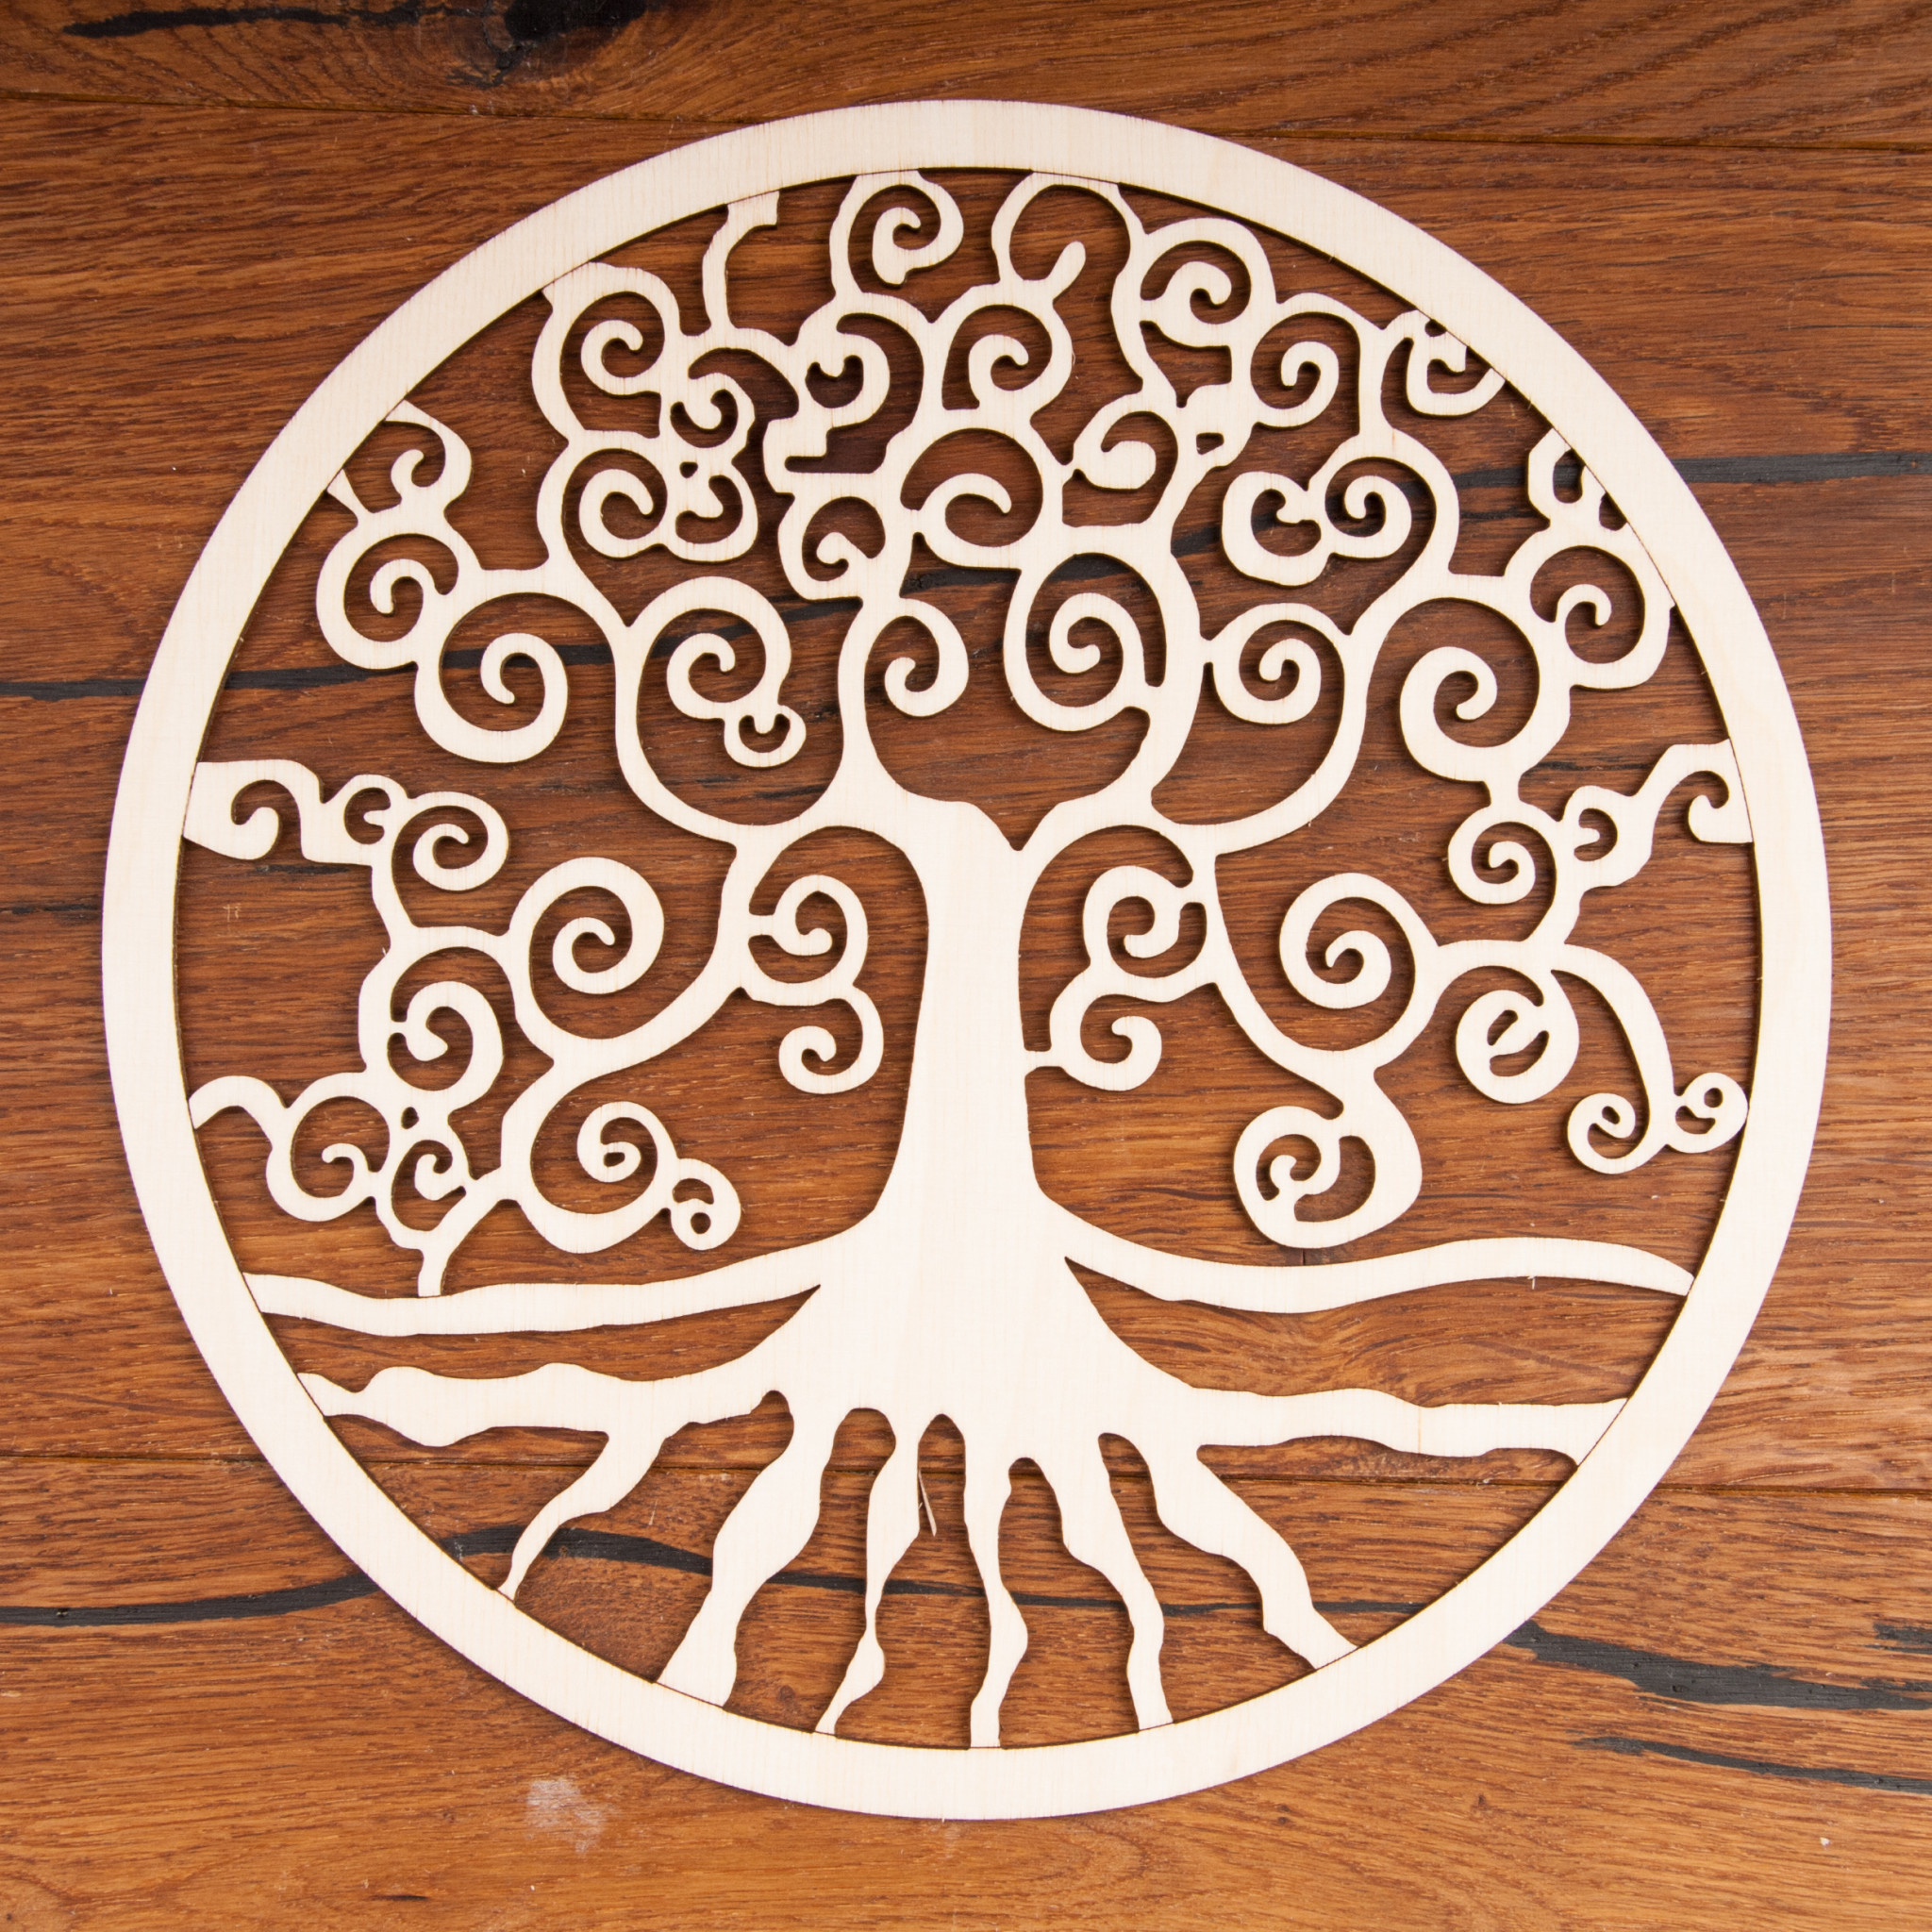 Levensboom van berkenhout (24 cm) - Nieuwetijdswinkel